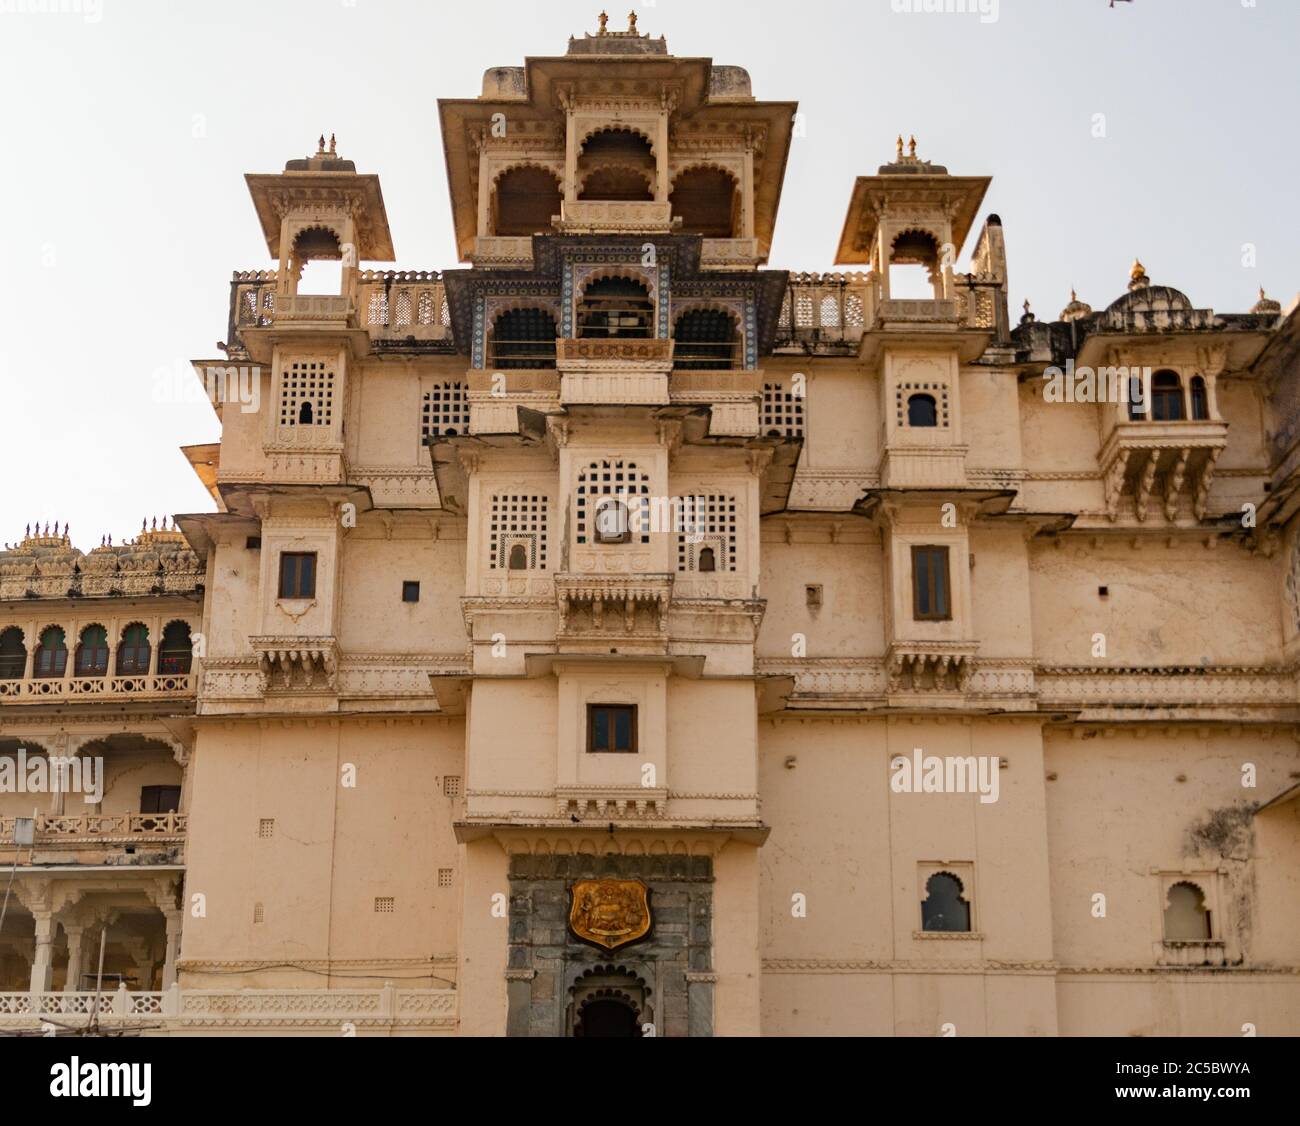 Entrée principale du palais de la ville, Udaipur Rajasthan Inde. Photo de haute qualité Banque D'Images